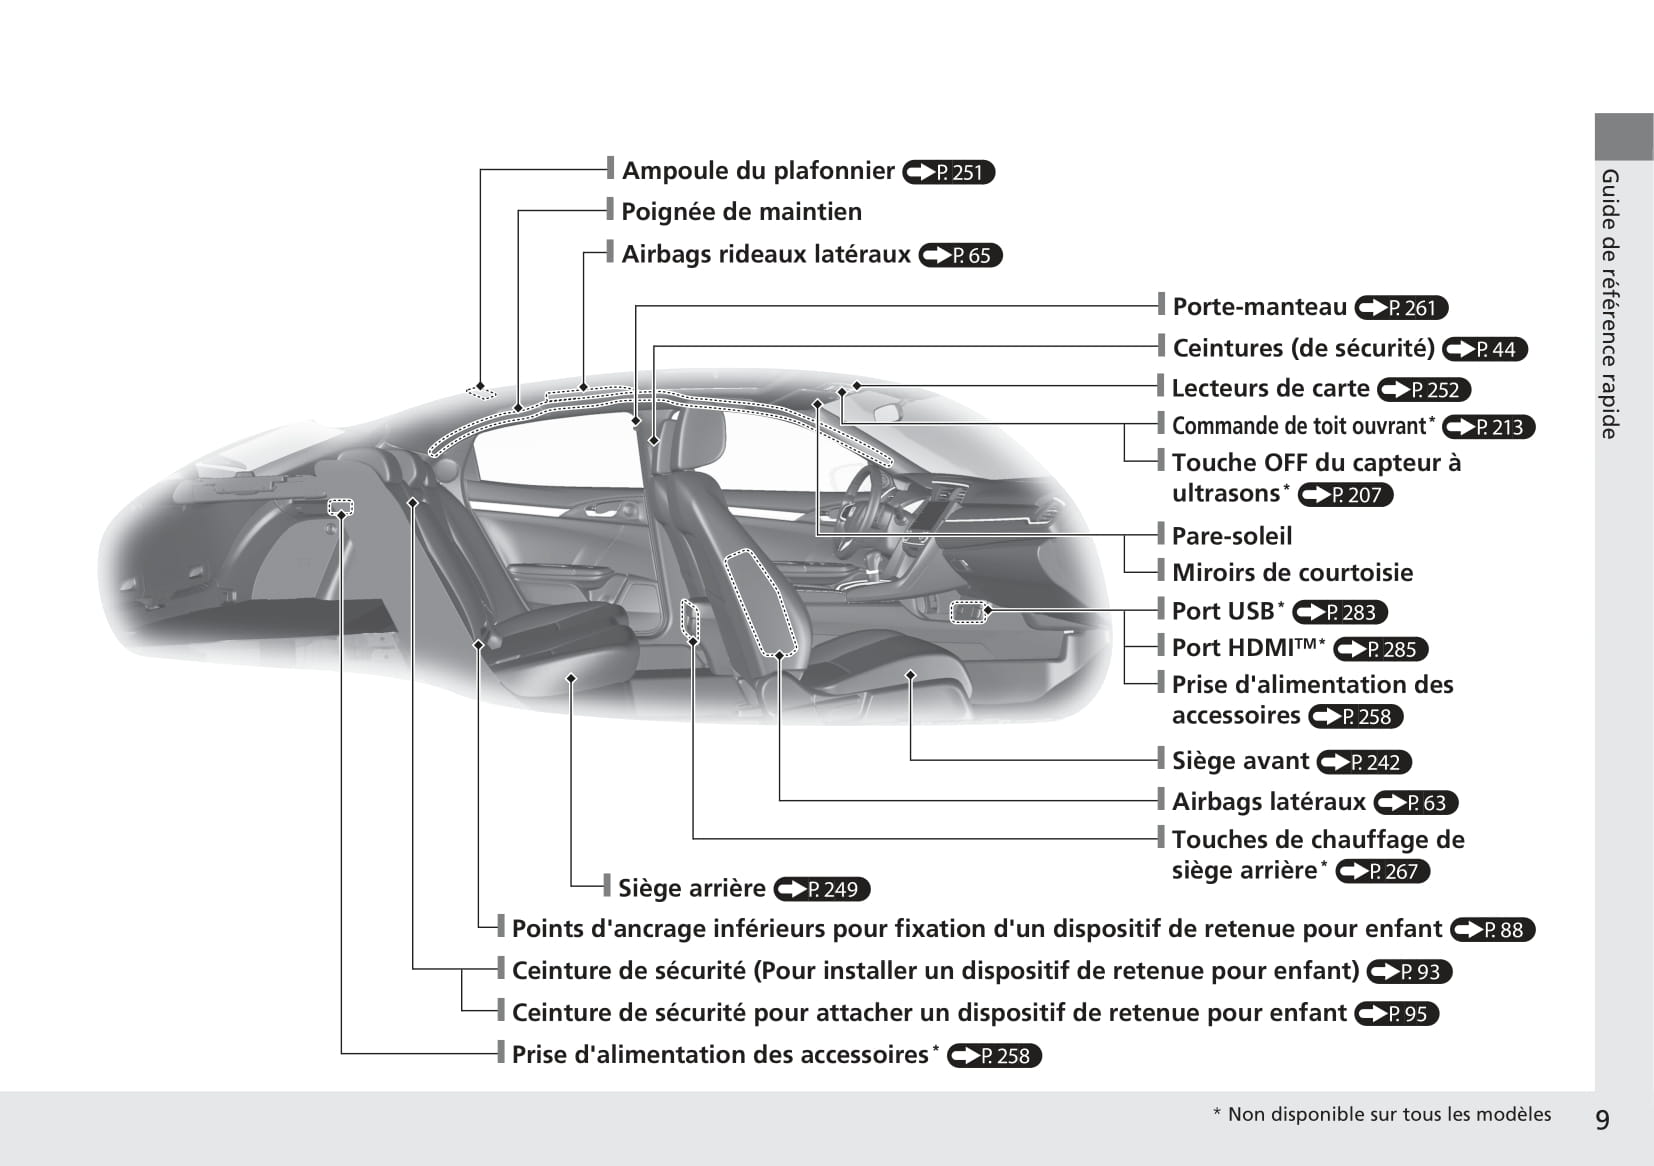 2009 Honda Civic 21, PDF, Ceinture de sécurité